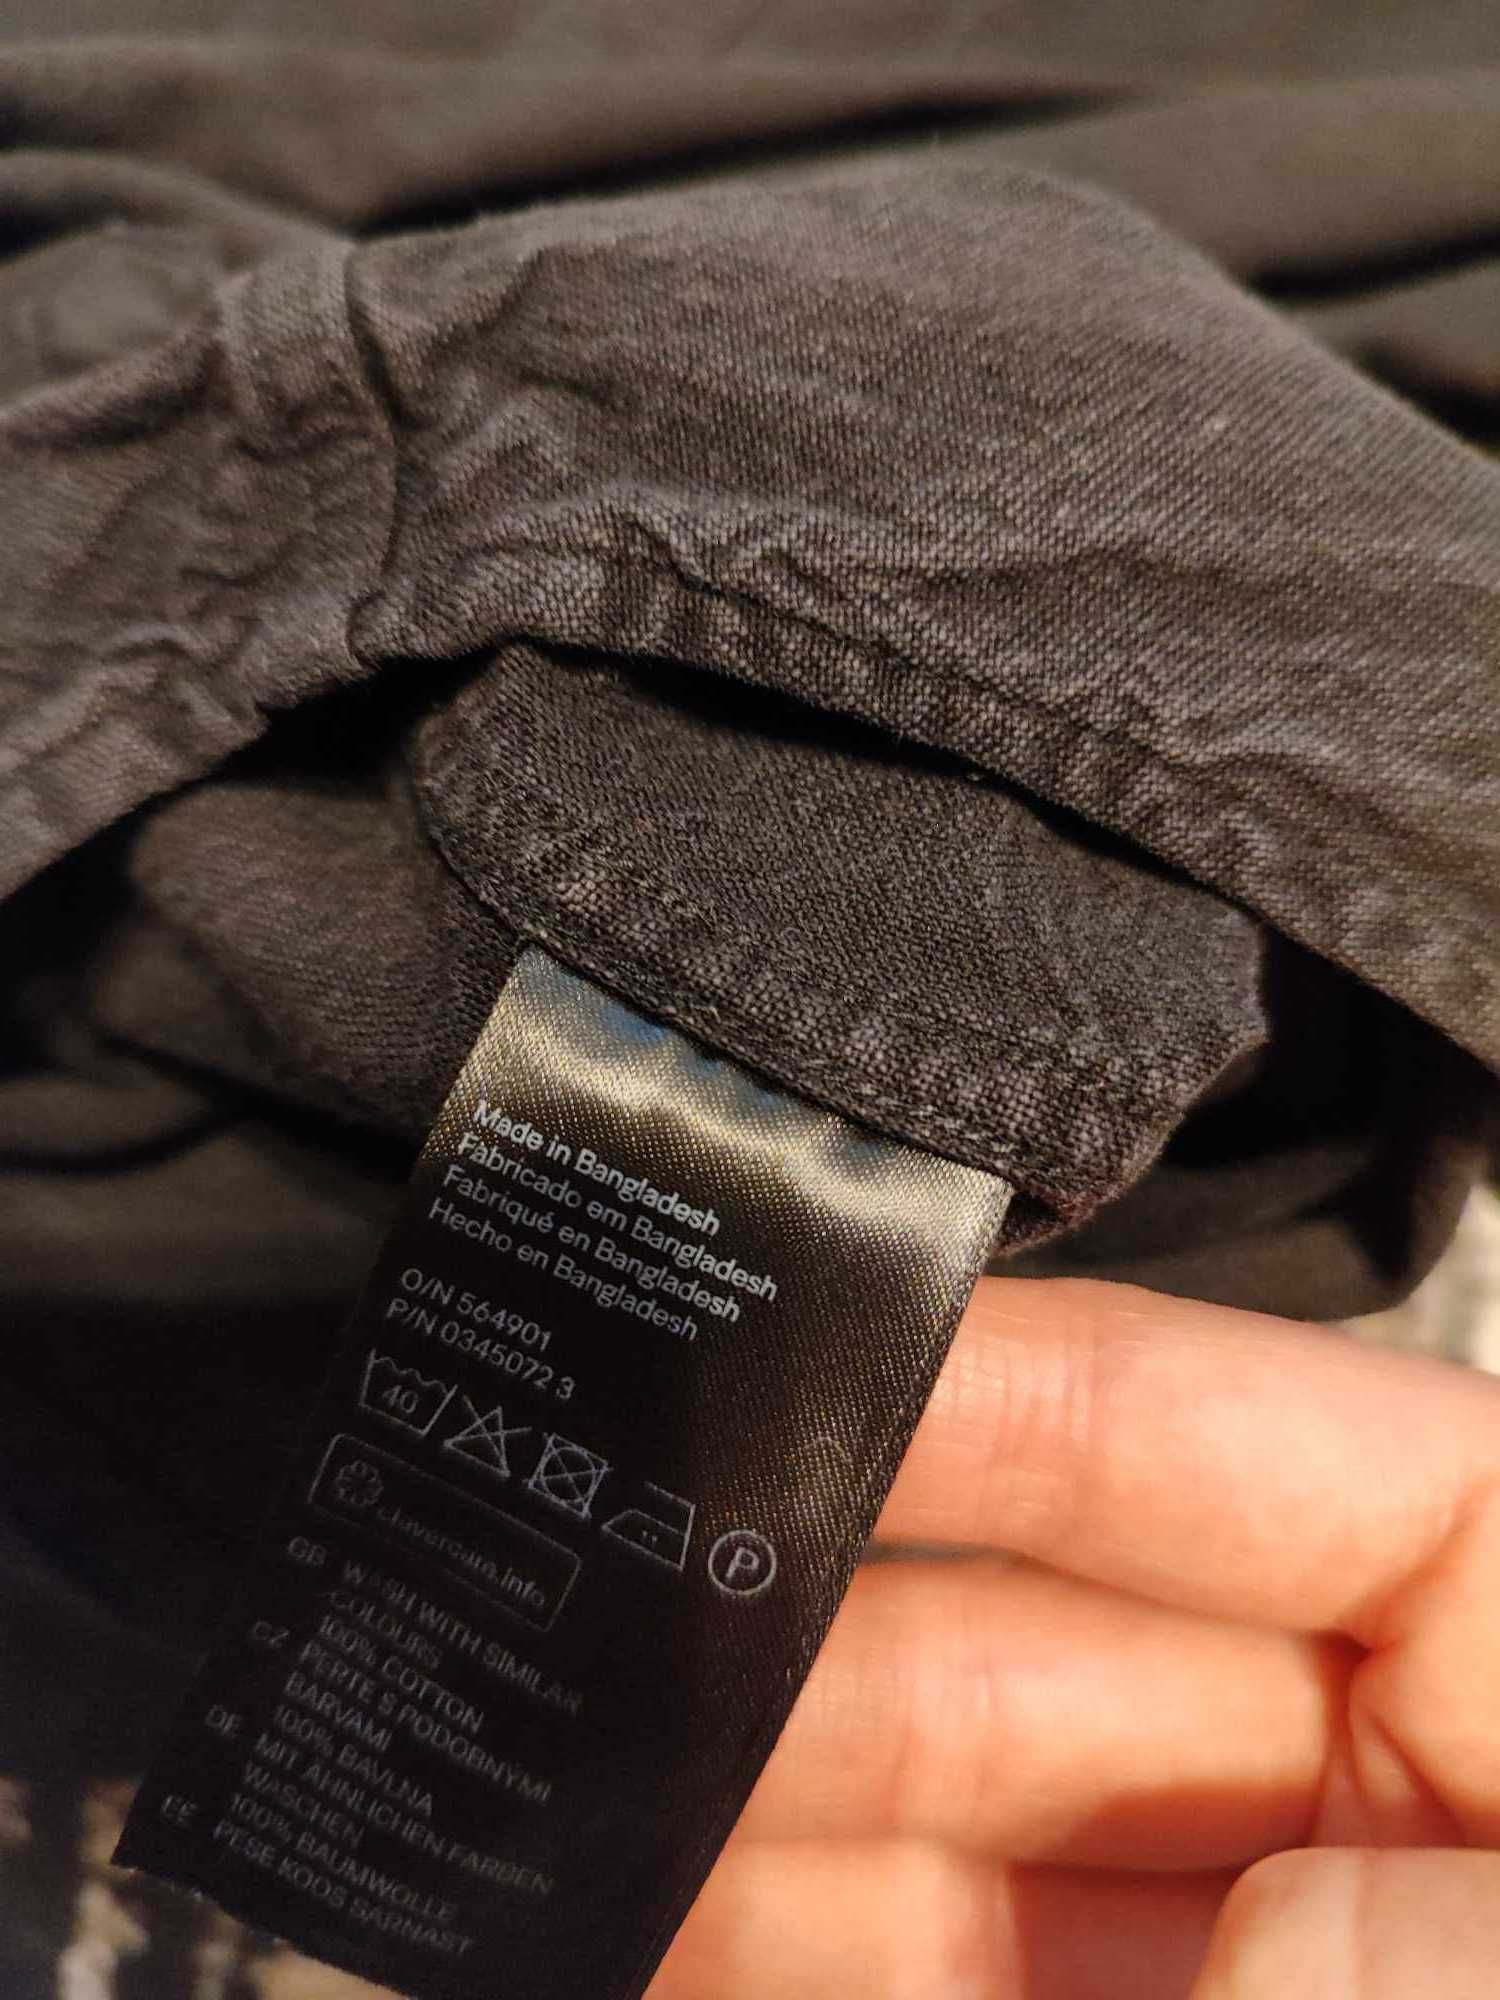 PRZECENA -50% ~ Czarna Koszula męska marki H&M, rozmiar S